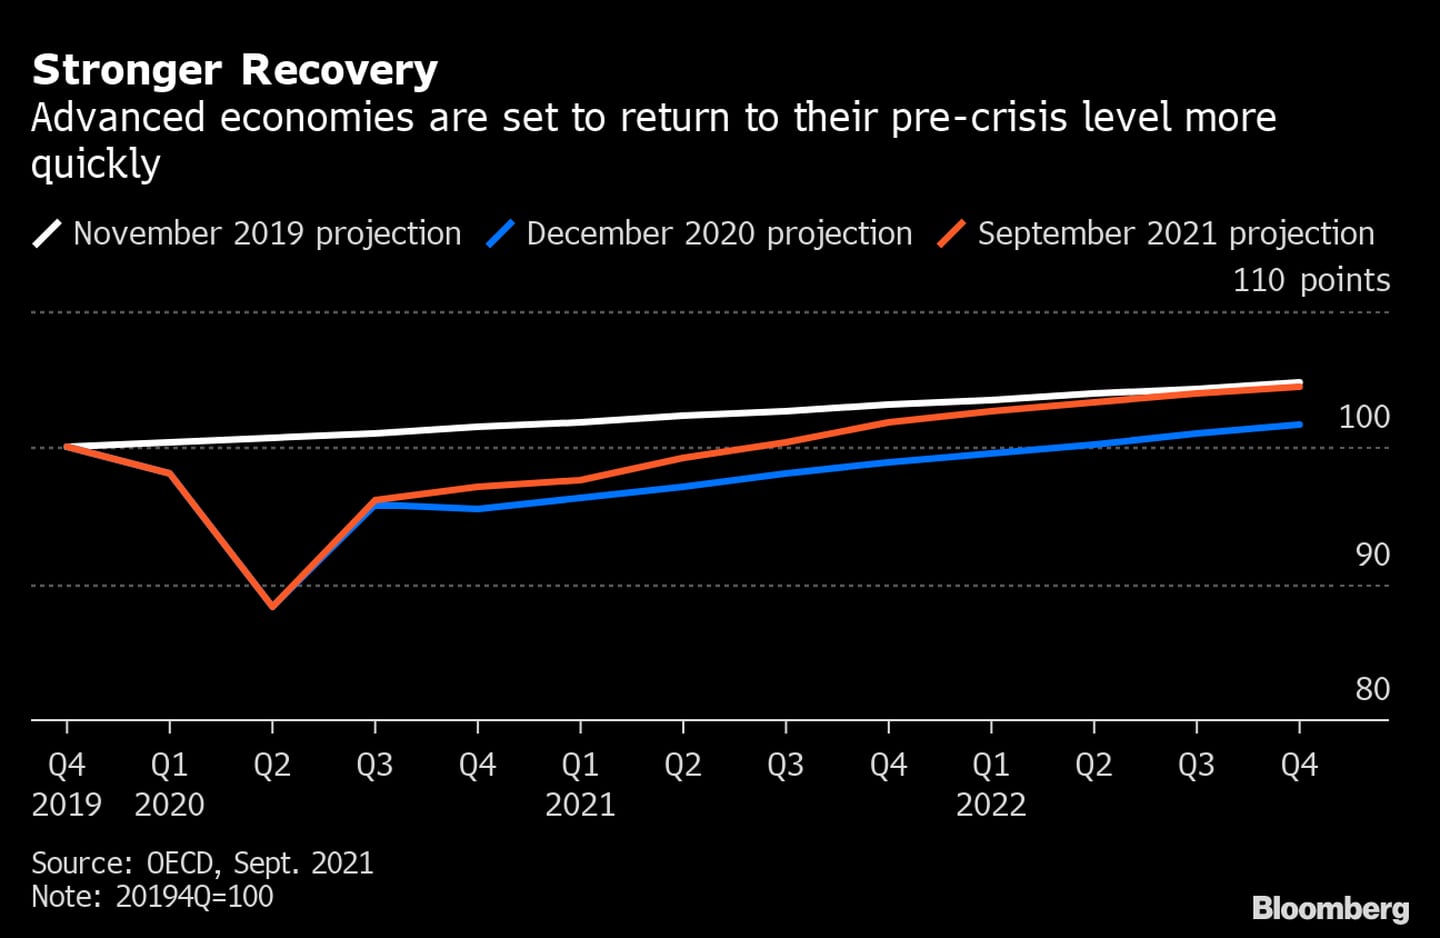 Las economías avanzadas deberían regresar a los niveles previos a la crisis con mayor rapidez. dfd